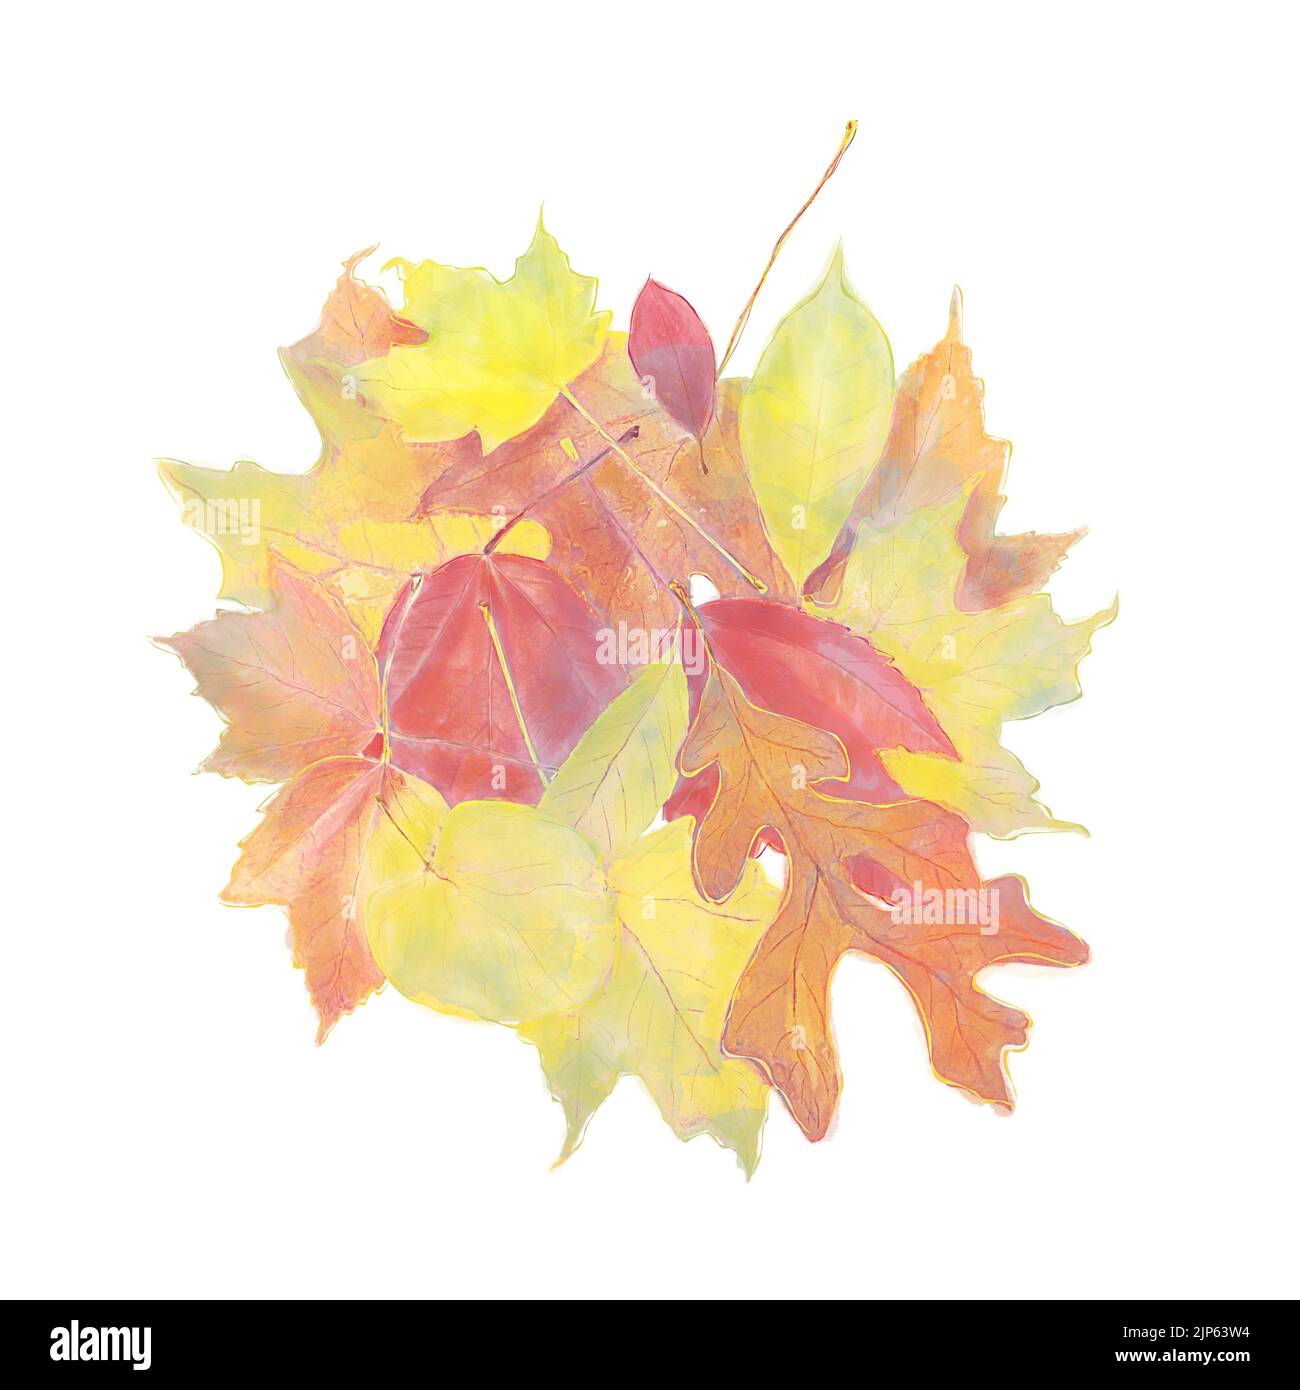 Acuarela Imagen de coloridas hojas otoñales aisladas sobre fondo blanco Foto de stock